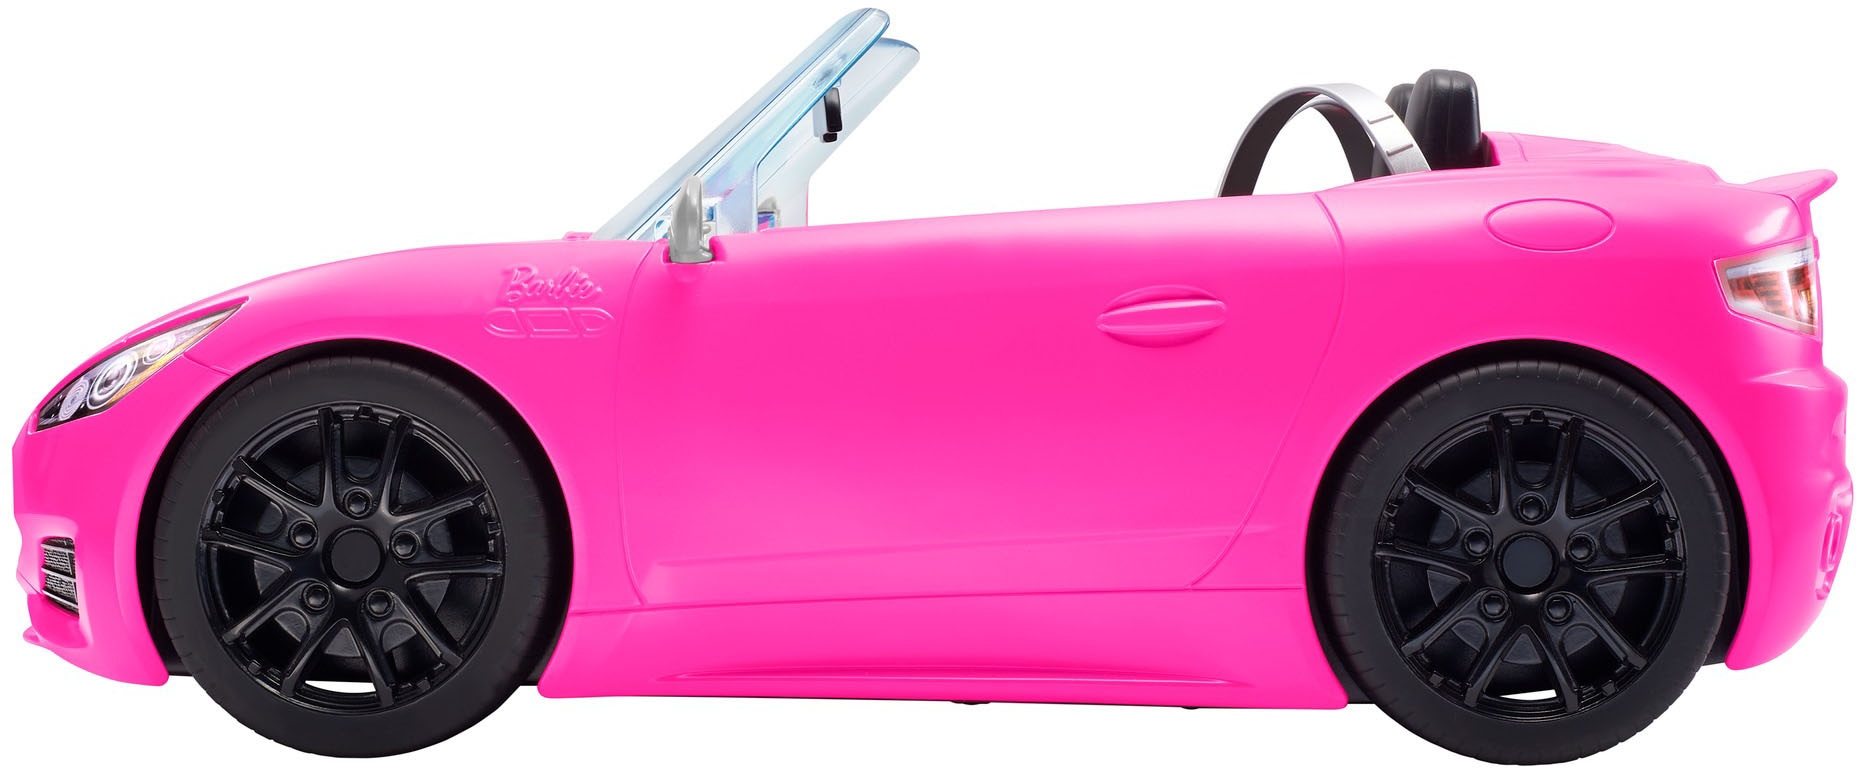 Barbie Puppe und Cabrio Auto in pink